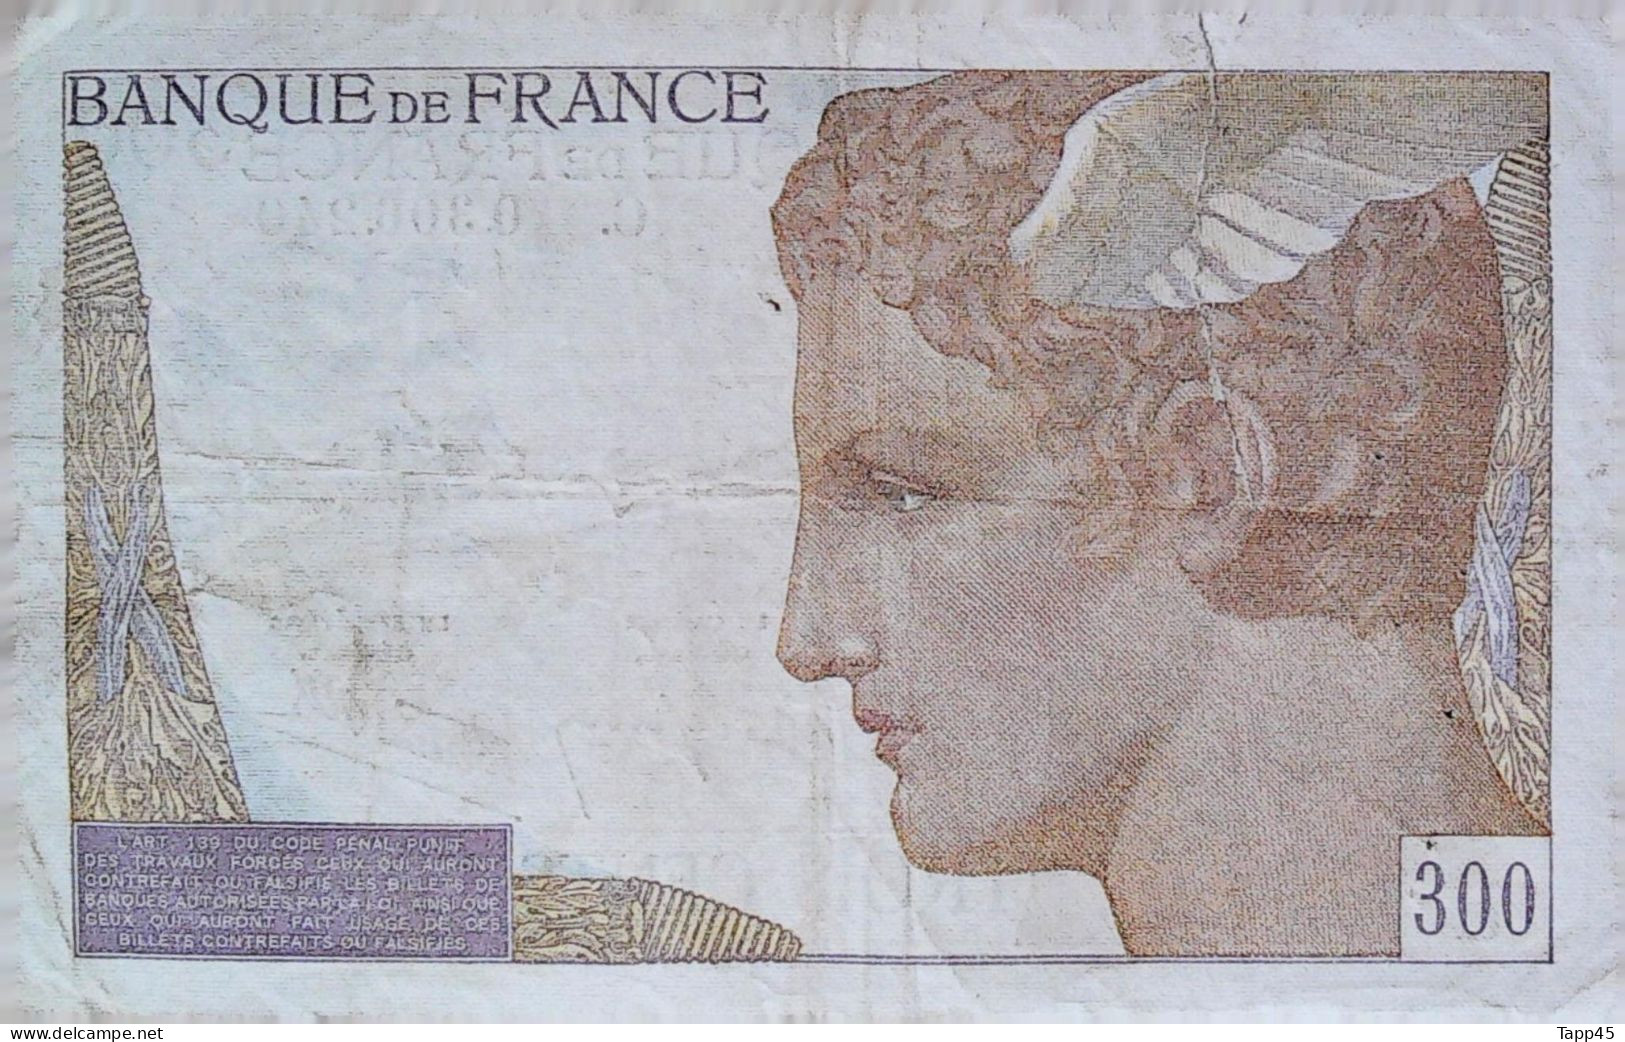 Billets > France > 300 F 1938 >Non Daté > 3 épinglages > Coupure Mais Aucun Manque >peu Commun > C03 - 300 F 1938-1939